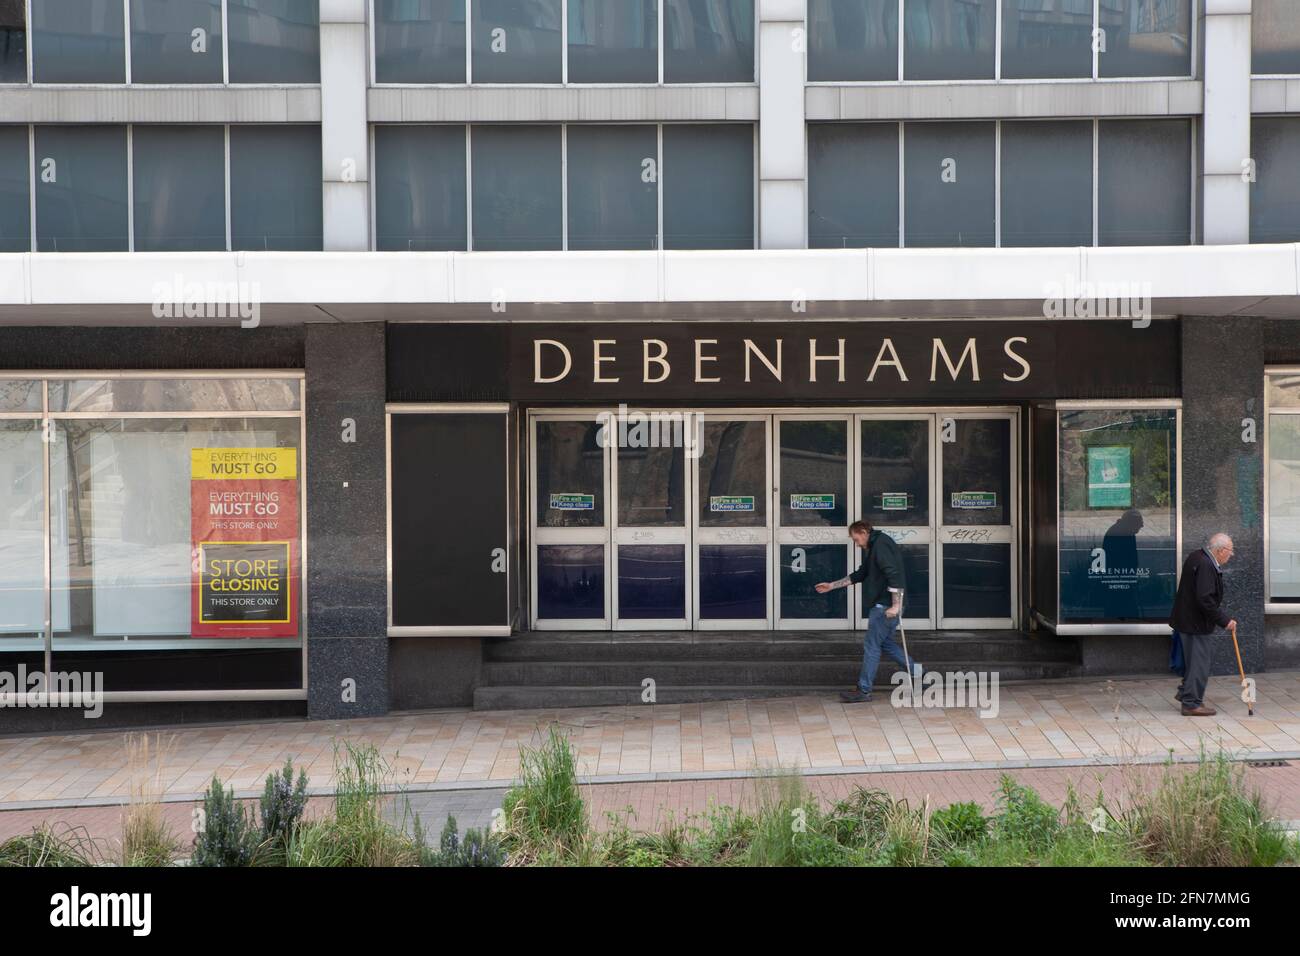 Debenhams Kaufhäuser, die am Samstag, 15. Mai 2021, geschlossen werden. Sheffield City Centre, das derzeit saniert wird, aber bereits mehrere Kaufhäuser geschlossen hat. Viele befinden sich seit vielen Jahren im Stadtzentrum. Nämlich John Lewis (Formely Cole Brothers), Debenhams, Atkinsons und TJ Hugh. Stockfoto